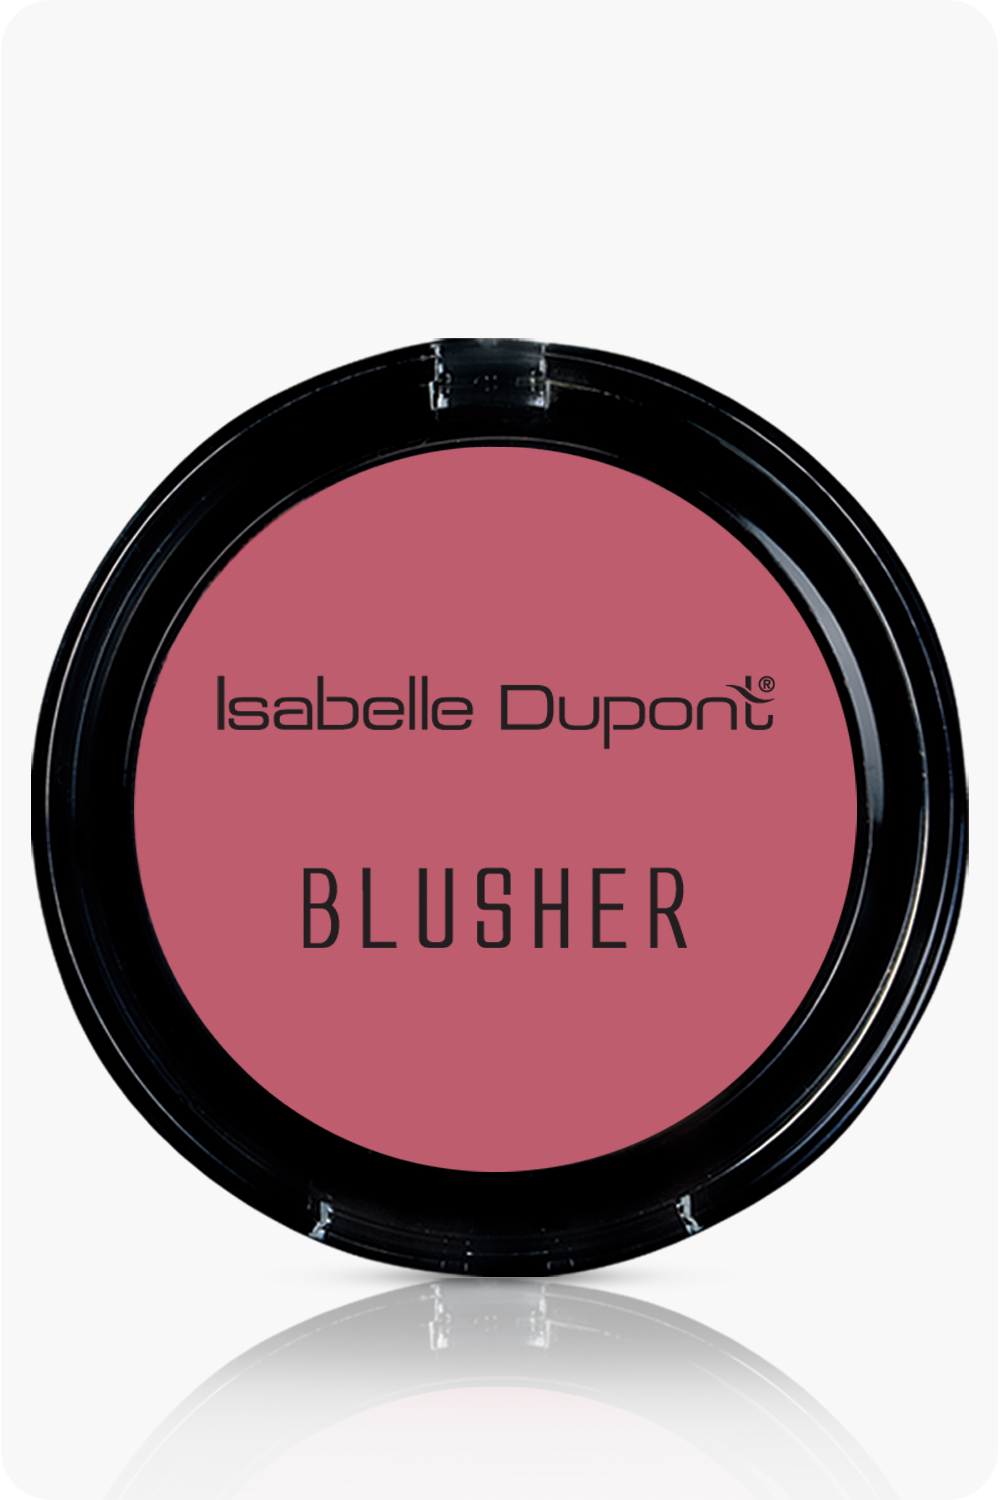 Isabelle Dupont Blusher